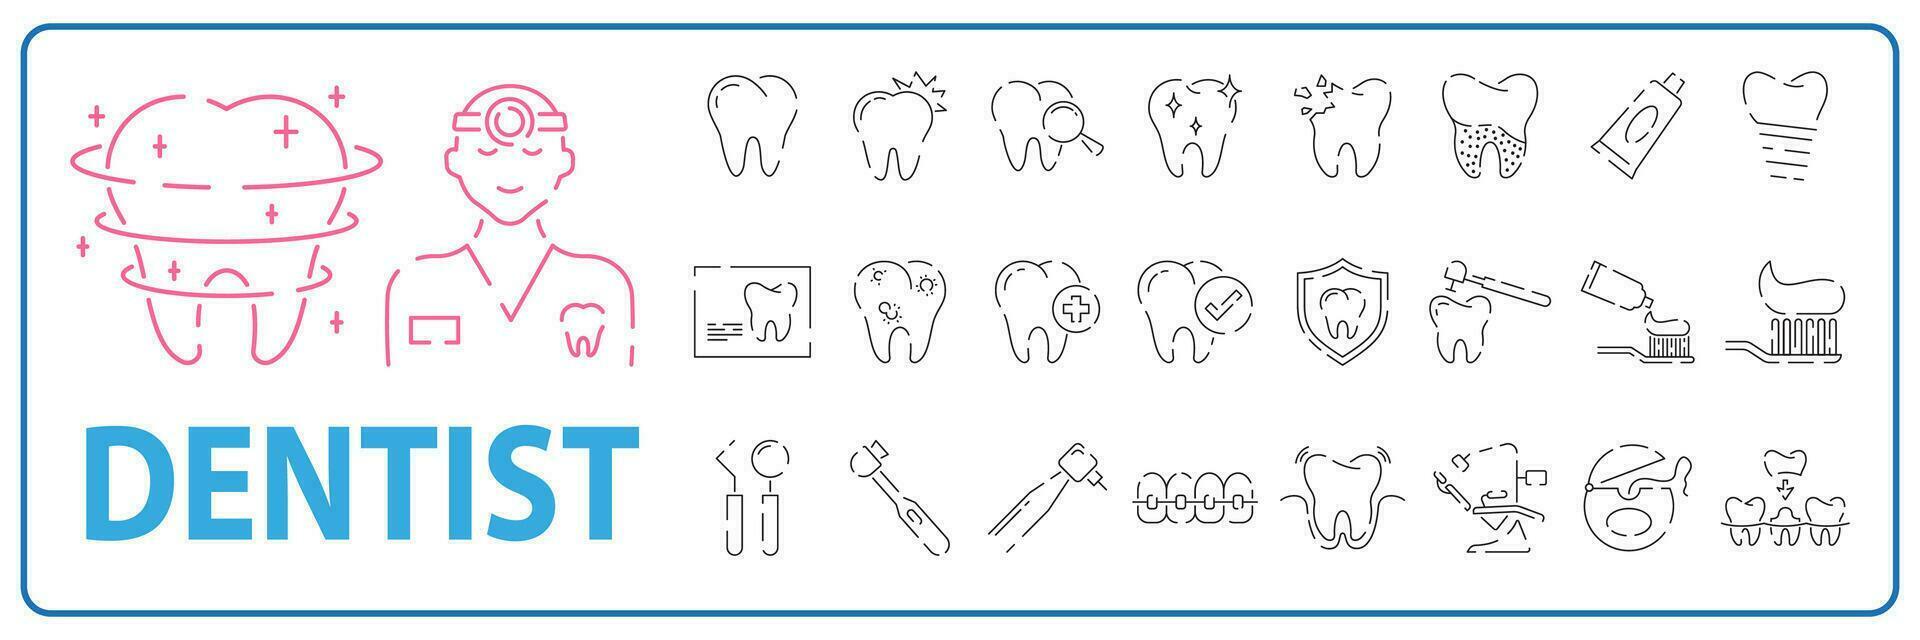 dental tand ikoner uppsättning, sådan som tandläkare, rena, skydda behandla, oral. hälsa, medicin, medicinsk eller sjukhus vektor. vektor